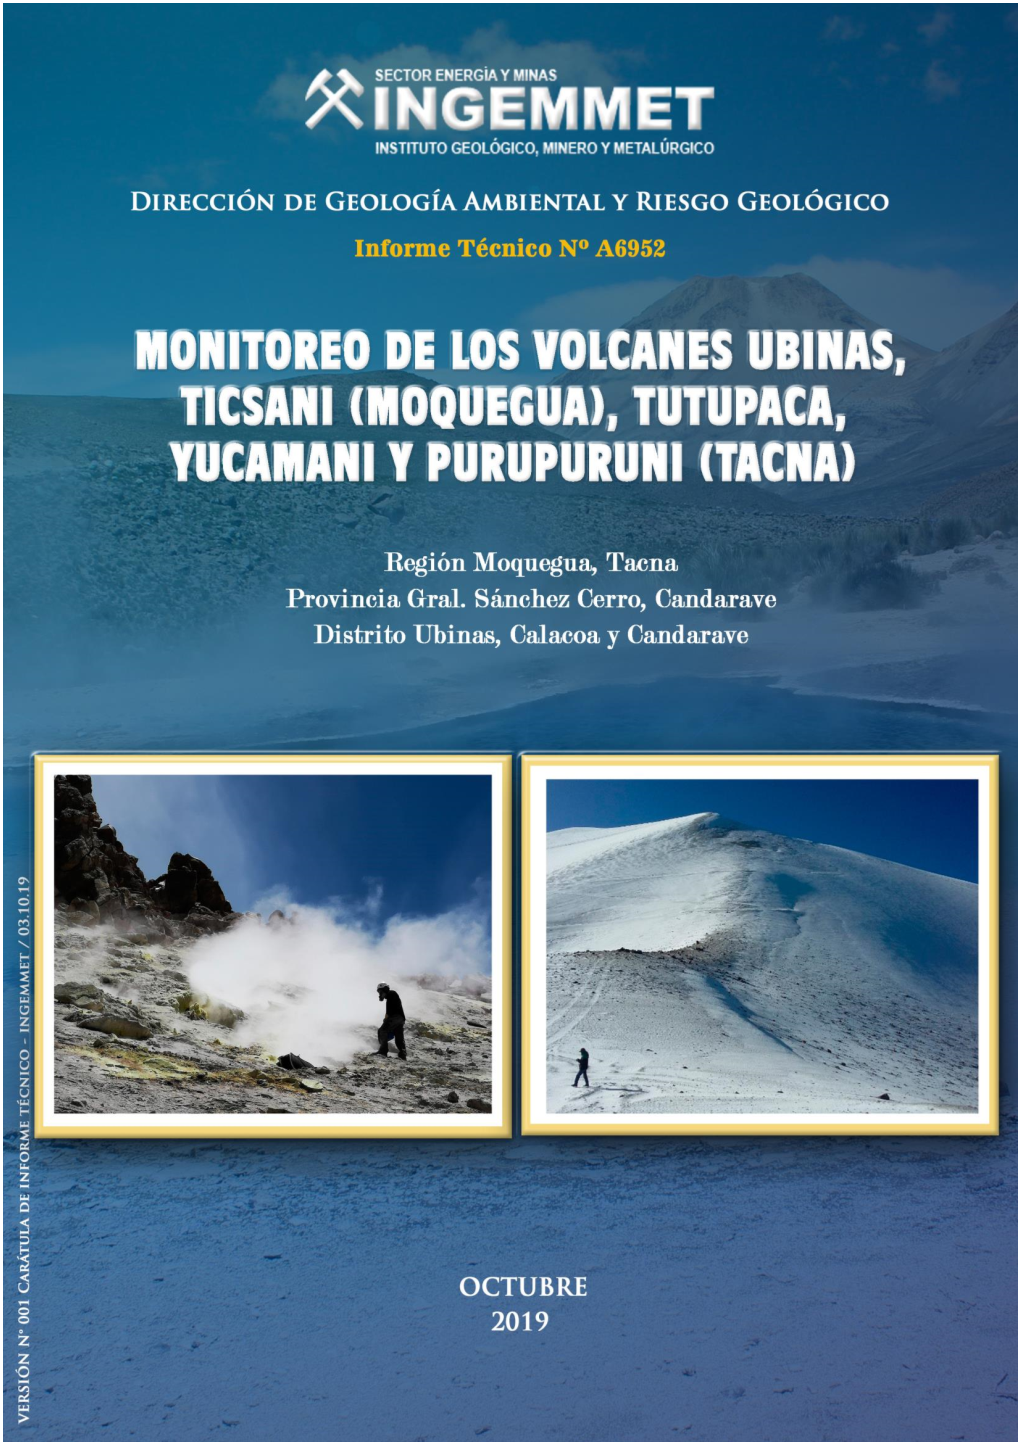 A6952 Monitoreo De Los Volcanes Ubinas, Ticsani (Moquegua)